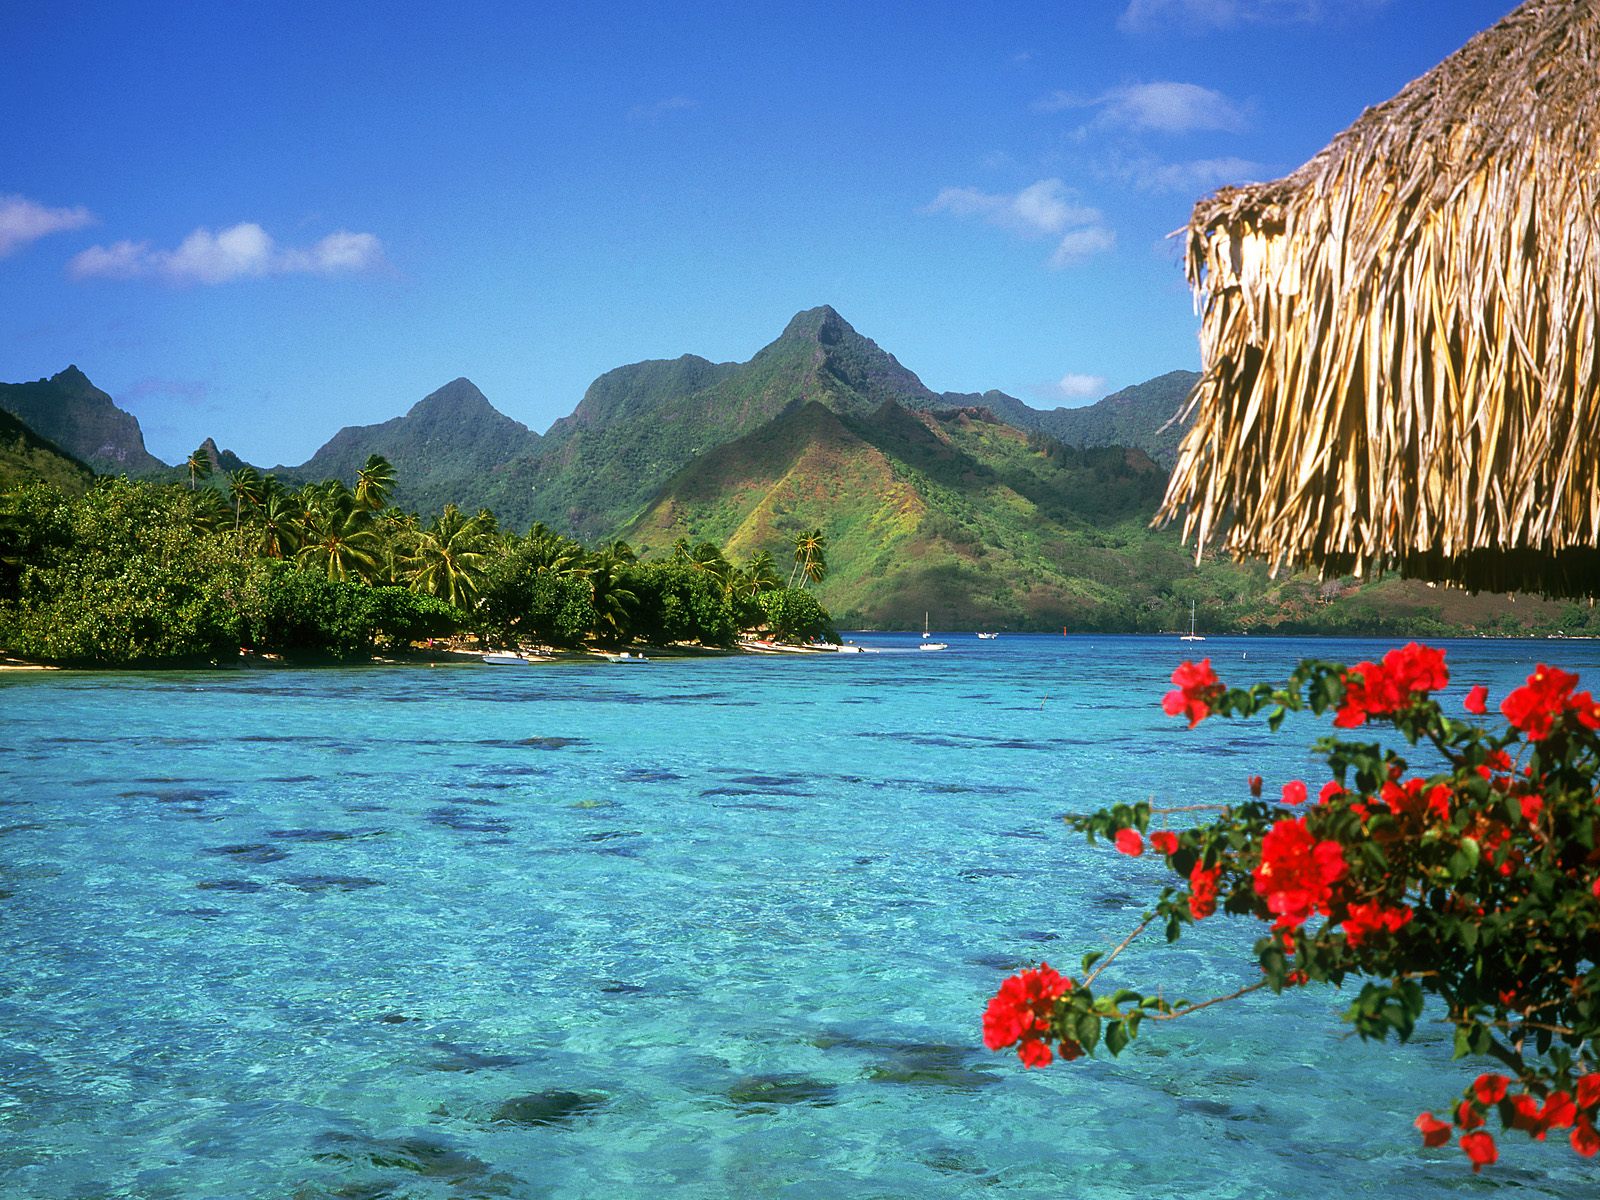 Vista de uno de los increibles paisajes de Bora Bora